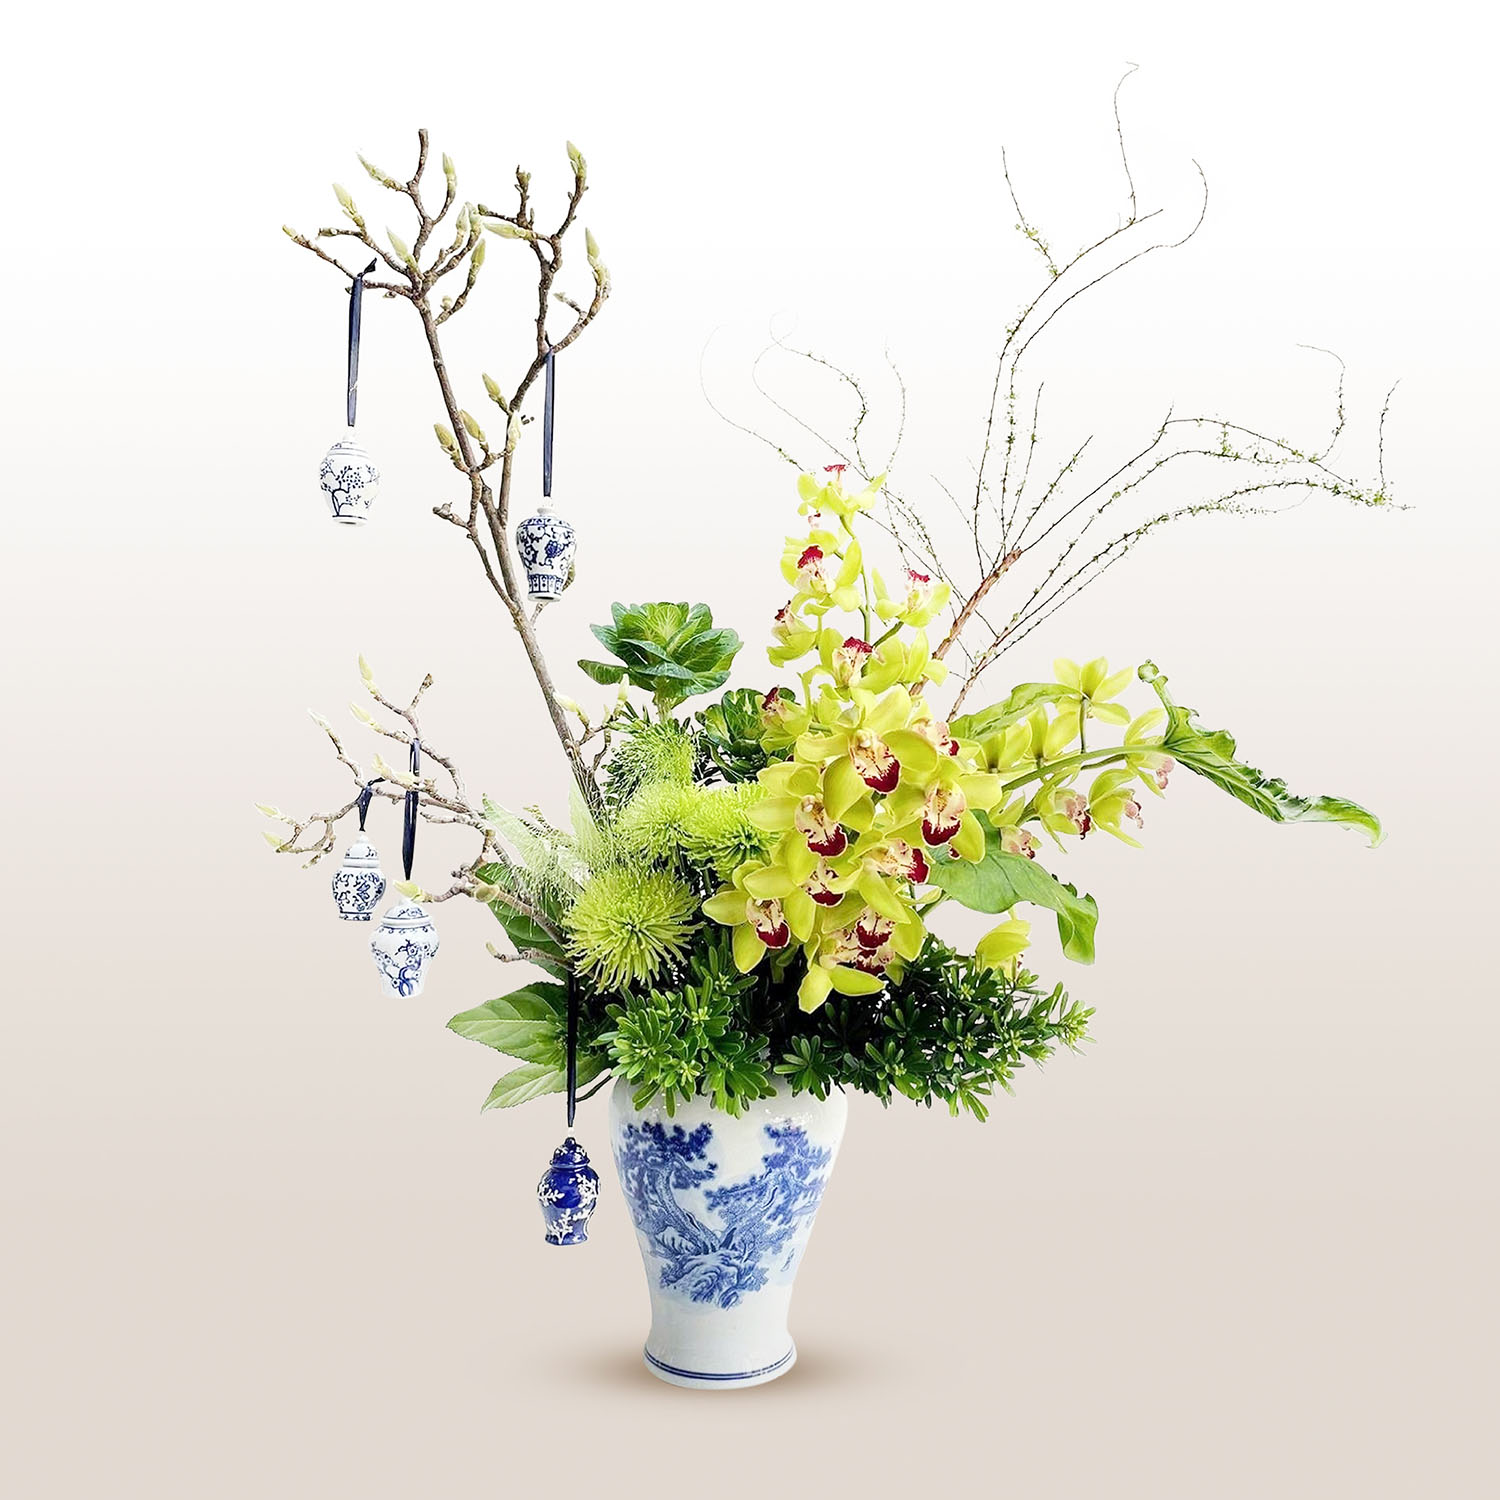 Lunar New Year Flower Arrangement “Peace” – Design 1